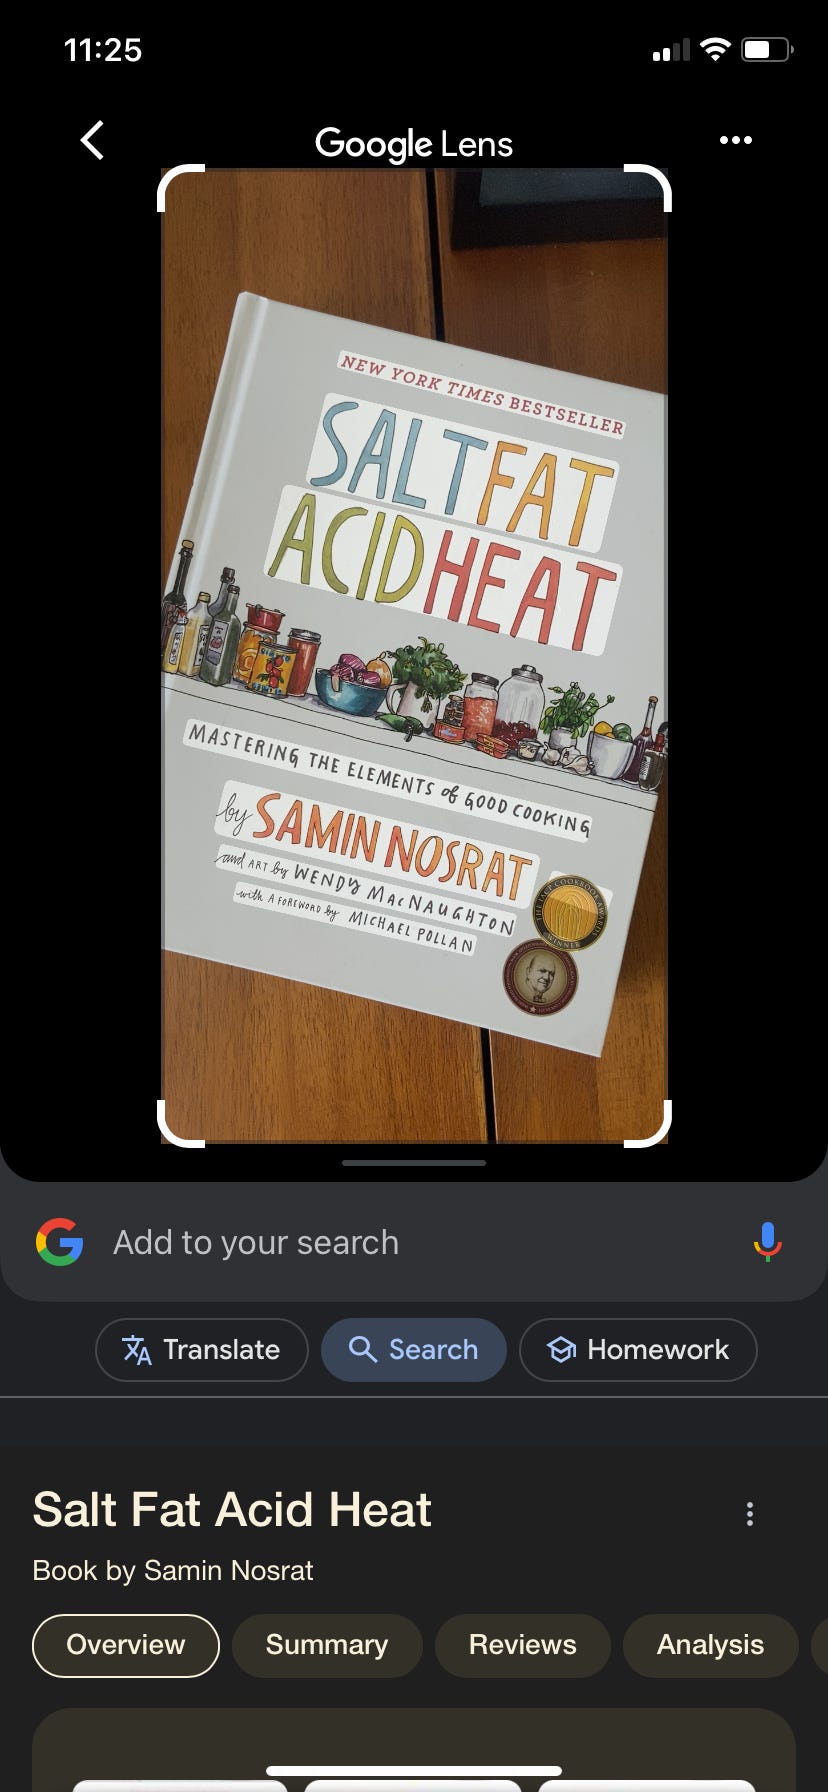 Ein Screenshot von Google Lens zeigt das Bild eines Buches auf einem Tisch. In den Suchergebnissen wird der Titel „Salt Fat Acid Heat“ von Samin Nosrat aufgeführt.